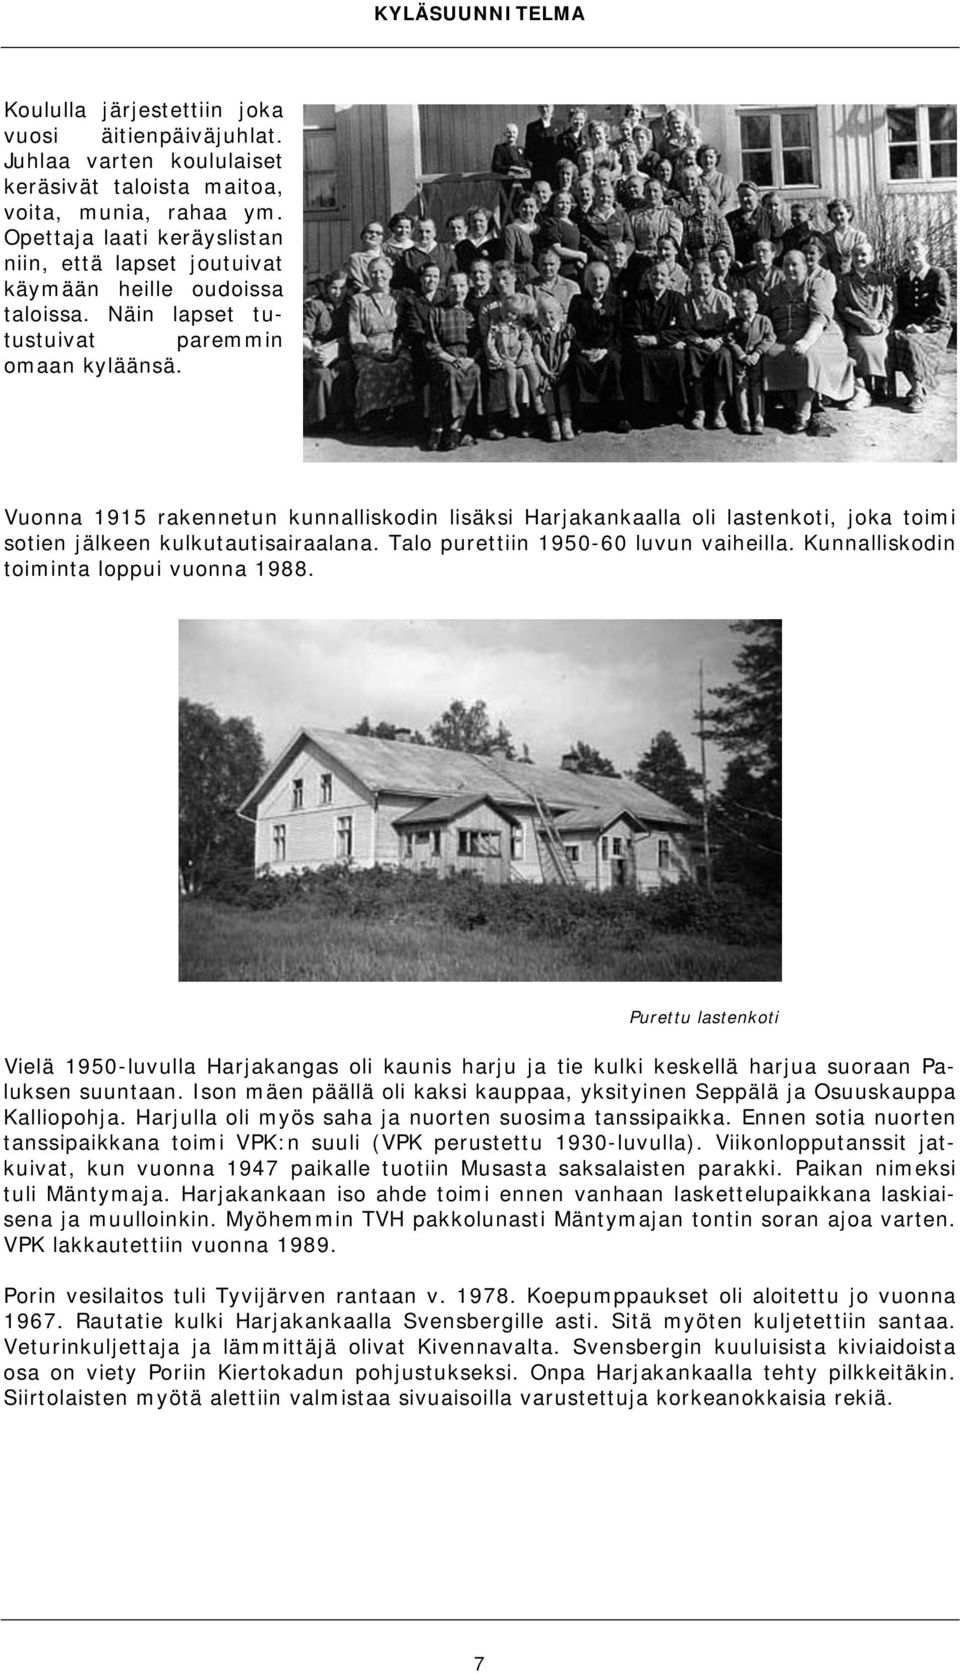 Vuonna 1915 rakennetun kunnalliskodin lisäksi Harjakankaalla oli lastenkoti, joka toimi sotien jälkeen kulkutautisairaalana. Talo purettiin 1950-60 luvun vaiheilla.